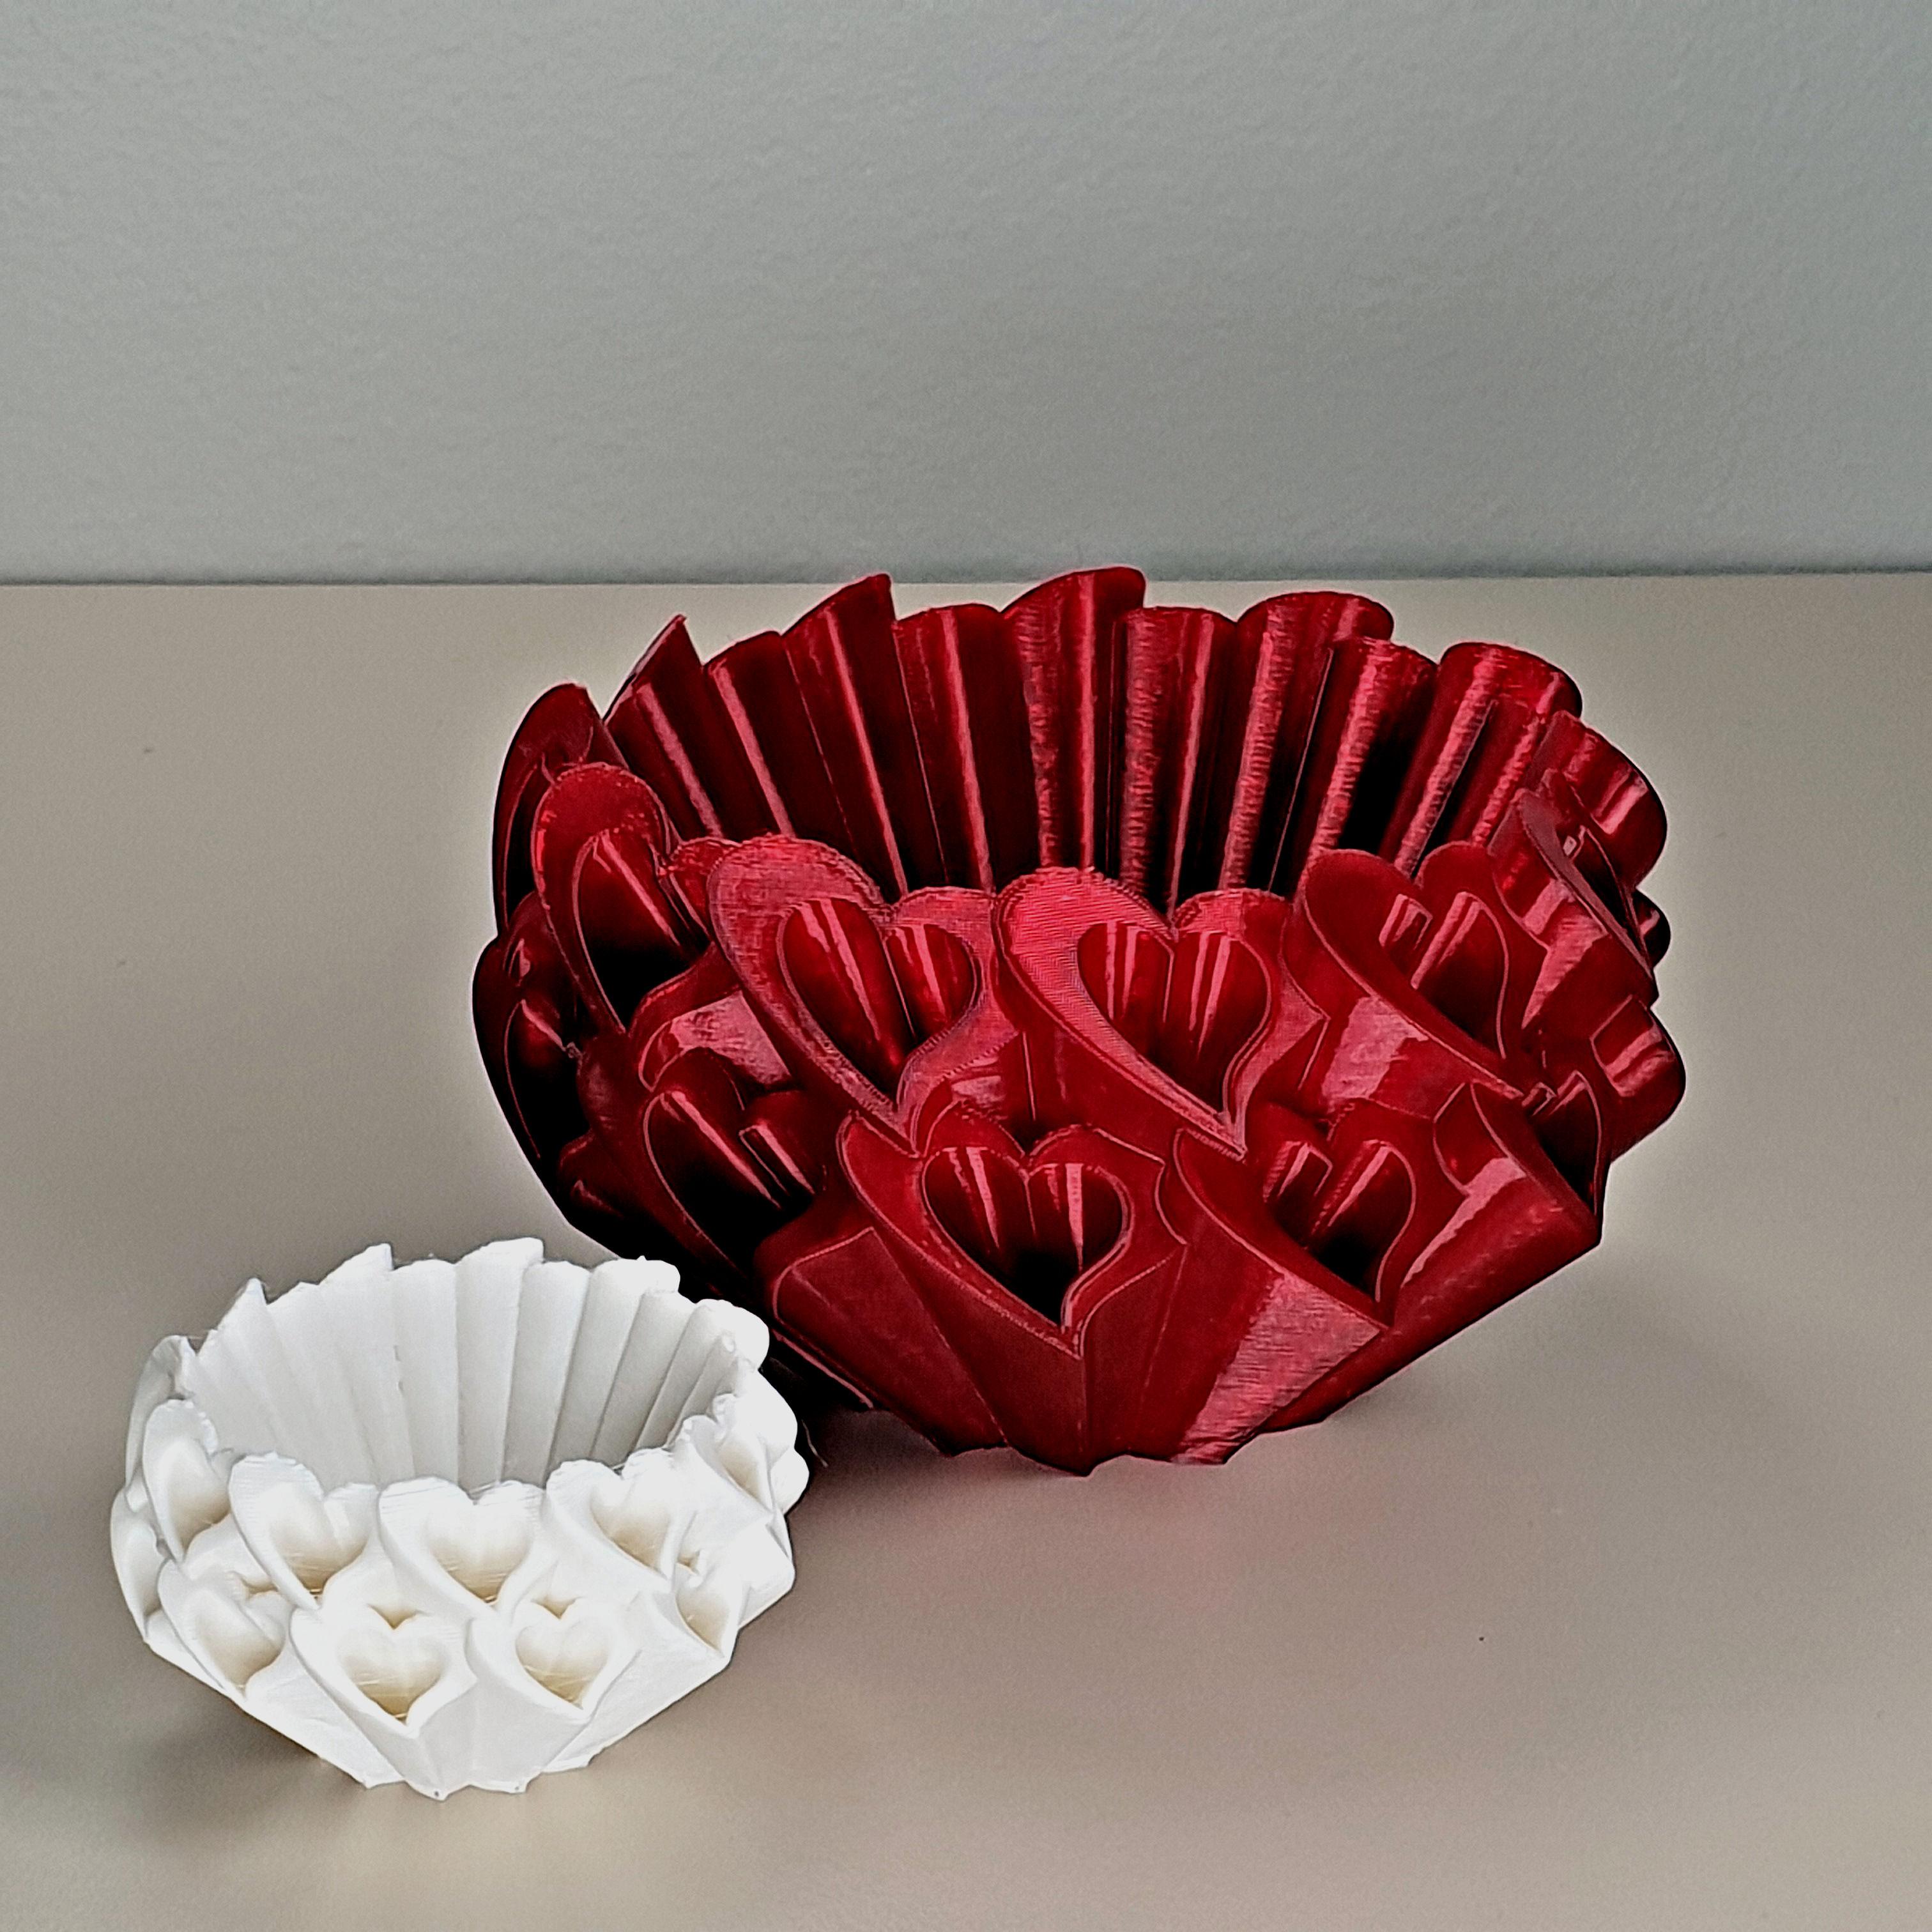 Hearts bowl 3d model